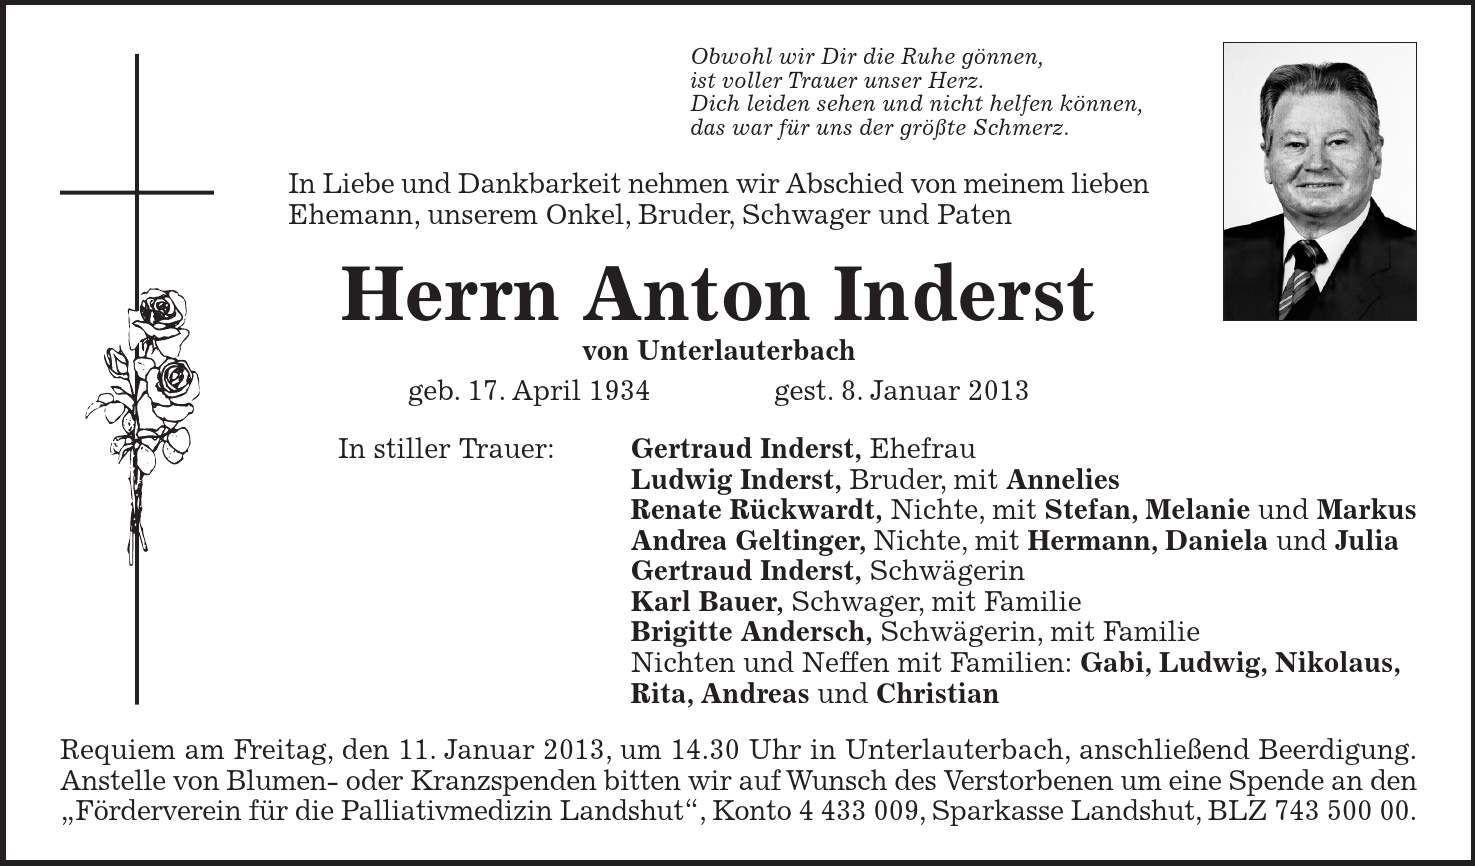 Requiem am Freitag, den 11. Januar 2013, um 14.30 Uhr in Unterlauterbach, anschließend Beerdigung. Anstelle von Blumen- oder Kranzspenden bitten wir auf Wunsch des Verstorbenen um eine Spende an den 